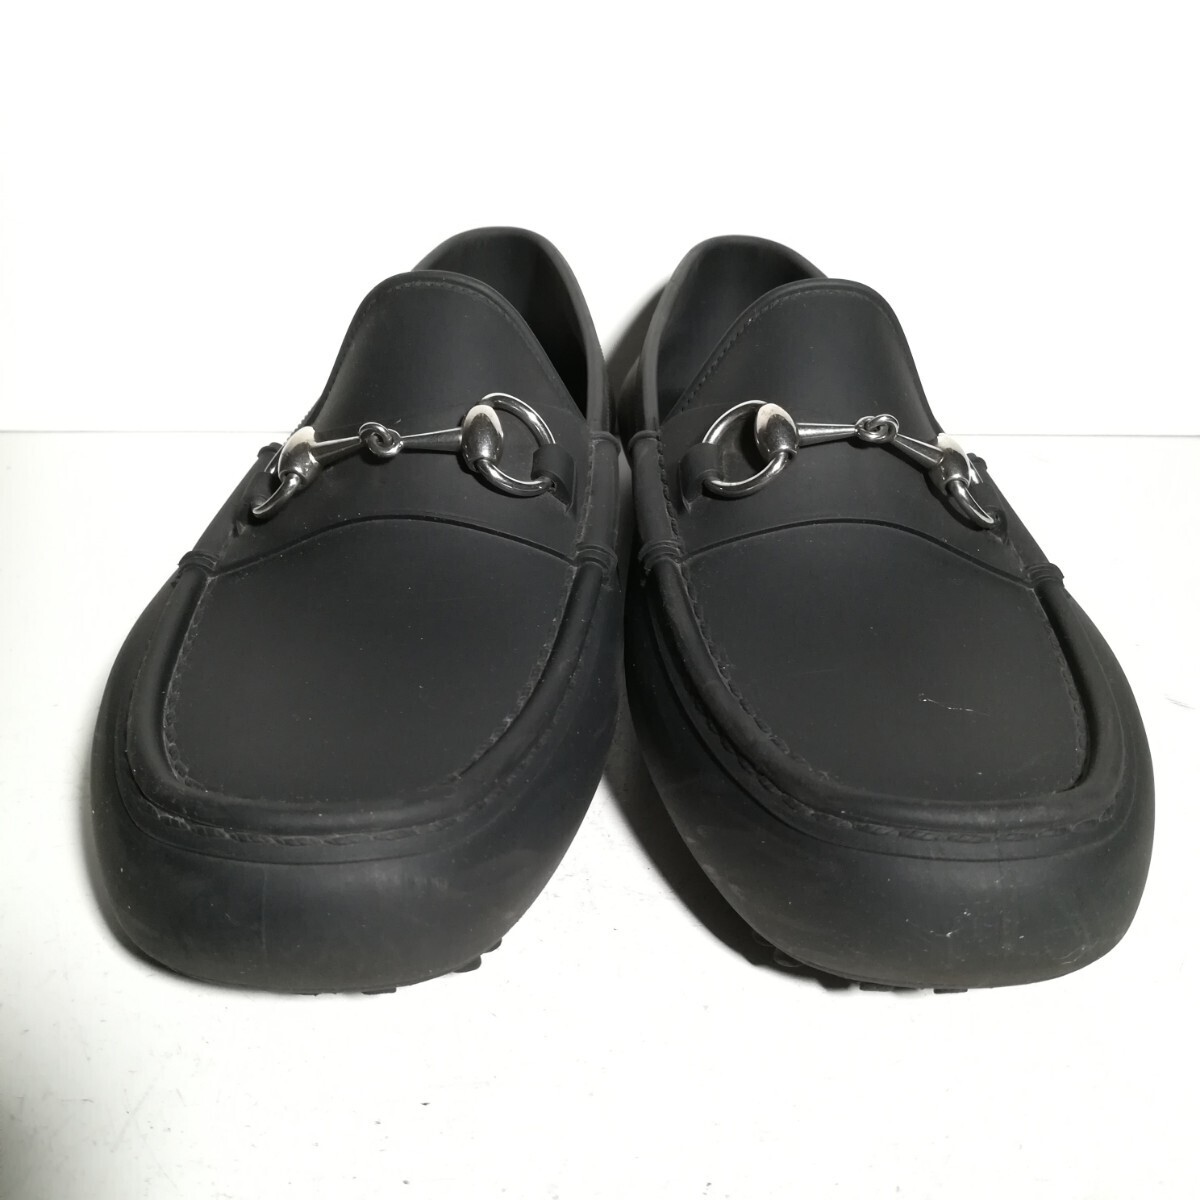 4124 * Gucci GUCCI* bit Loafer чёрный темно-серый 8 27.0cm степень платье обувь бизнес кожа обувь джентльмен обувь 